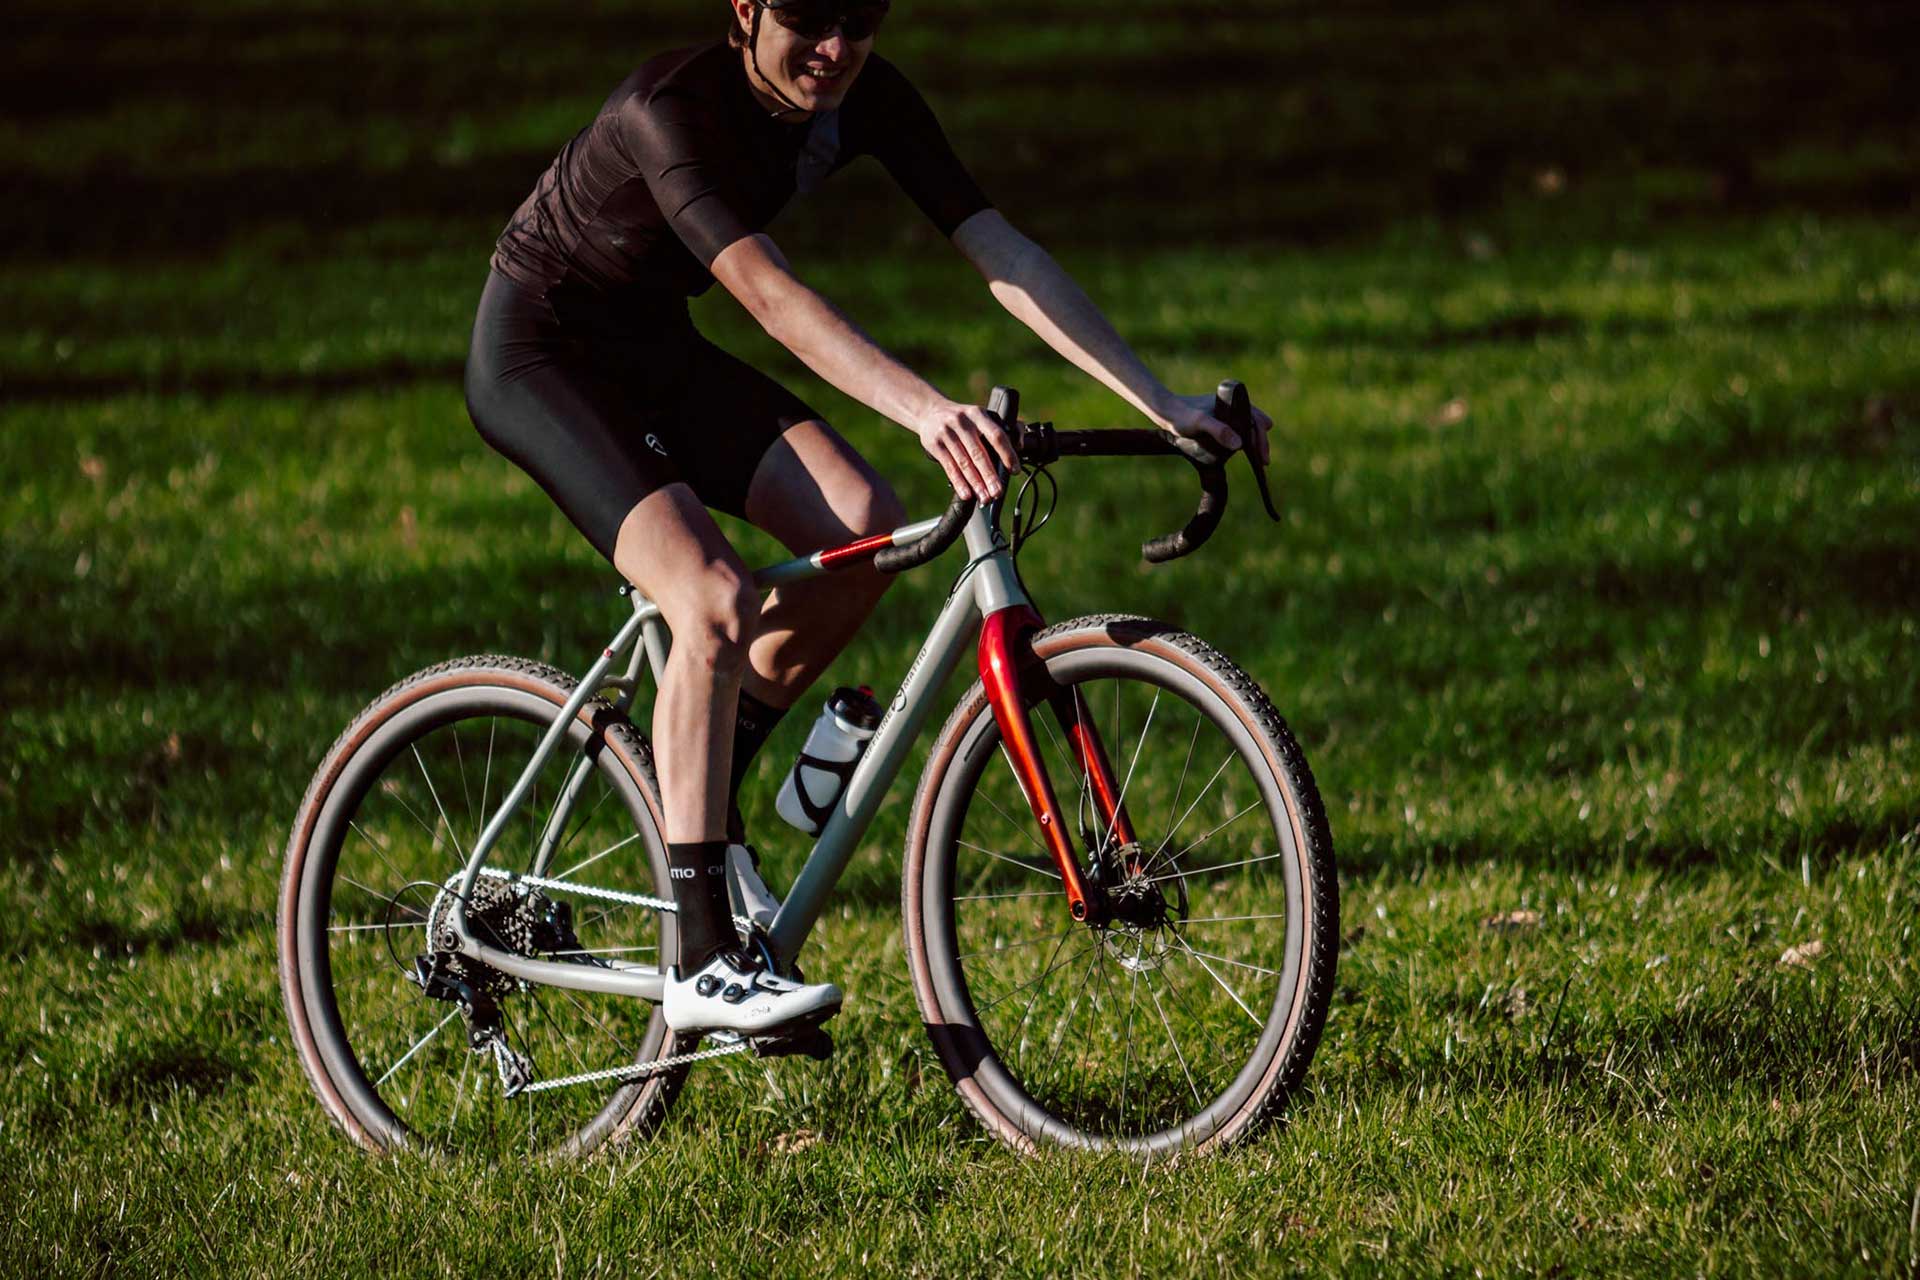 Bicicletta Officine Mattio modello SANTIAGO AL, Gravel in alluminio con geometrie adatte al ciclocross, produzione made in italy ambientata 08